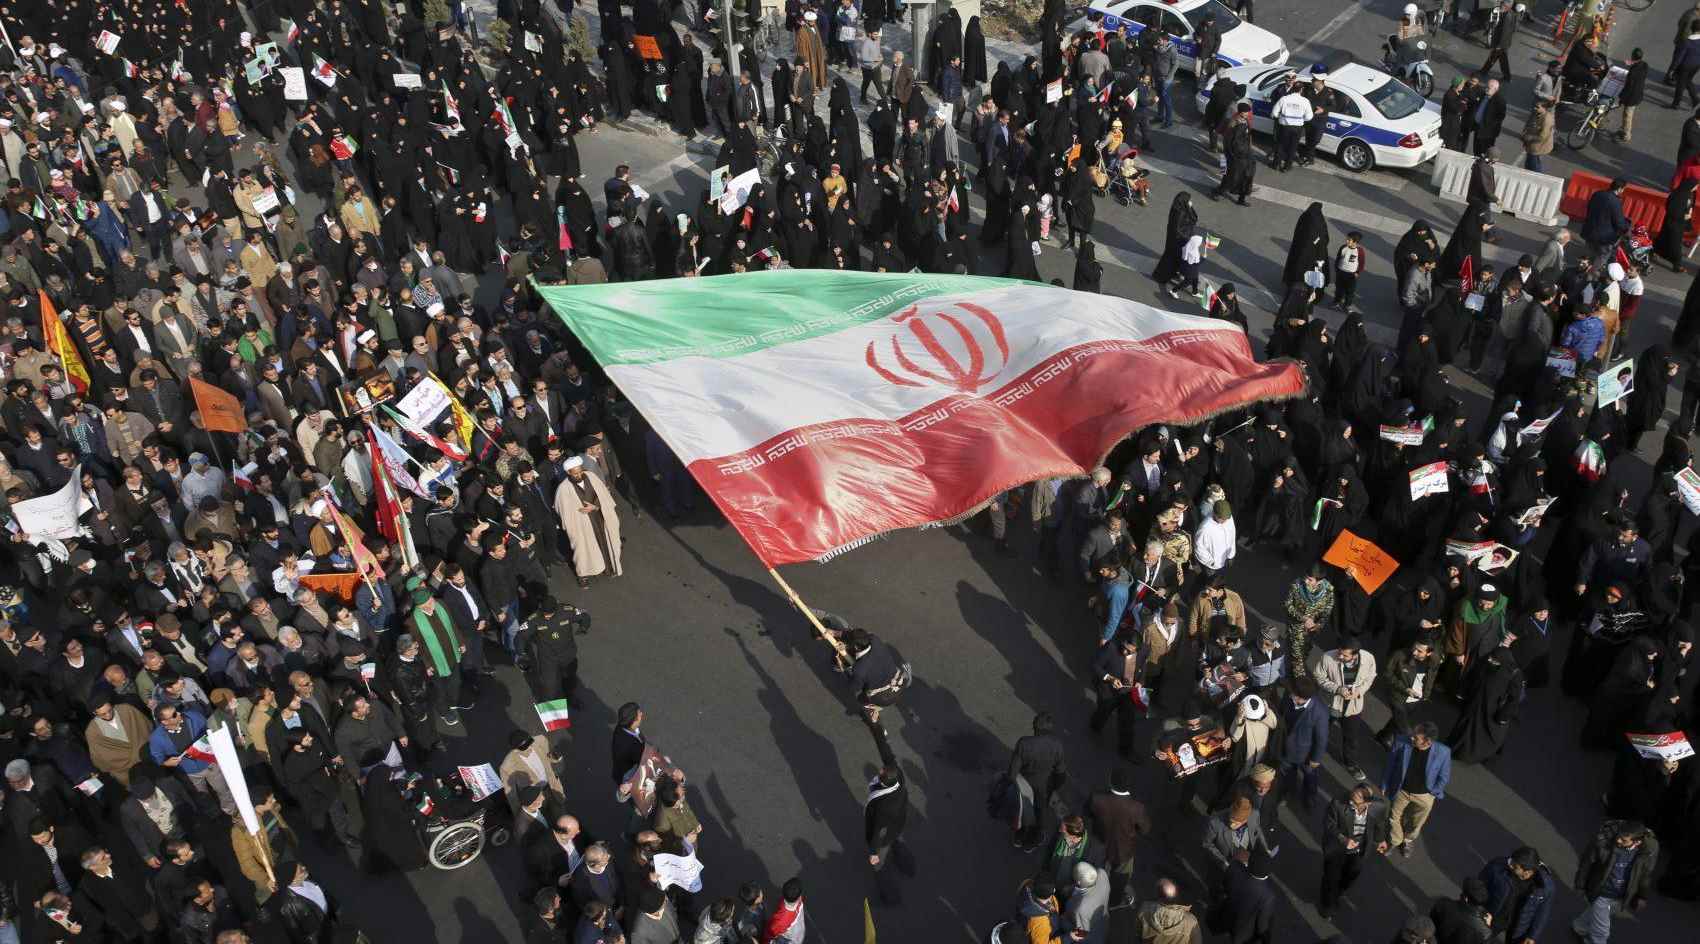 iranprotest2018_cec1ecaf-a71e-4827-886d-1766d78fc8b8